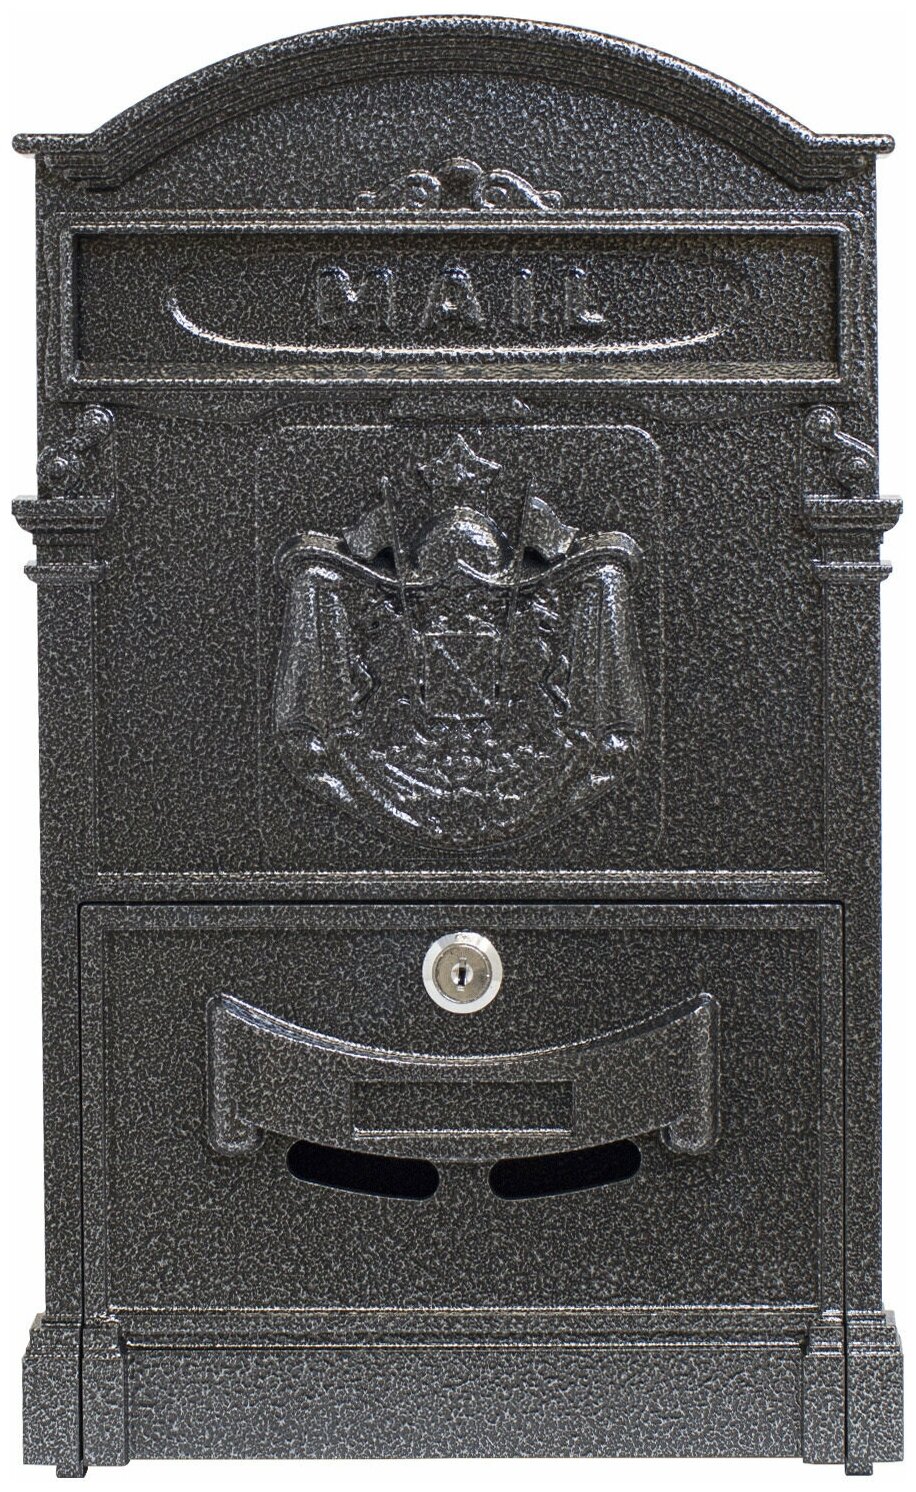 Почтовый ящик с замком уличный металлический для дома аллюр №4010 серебро